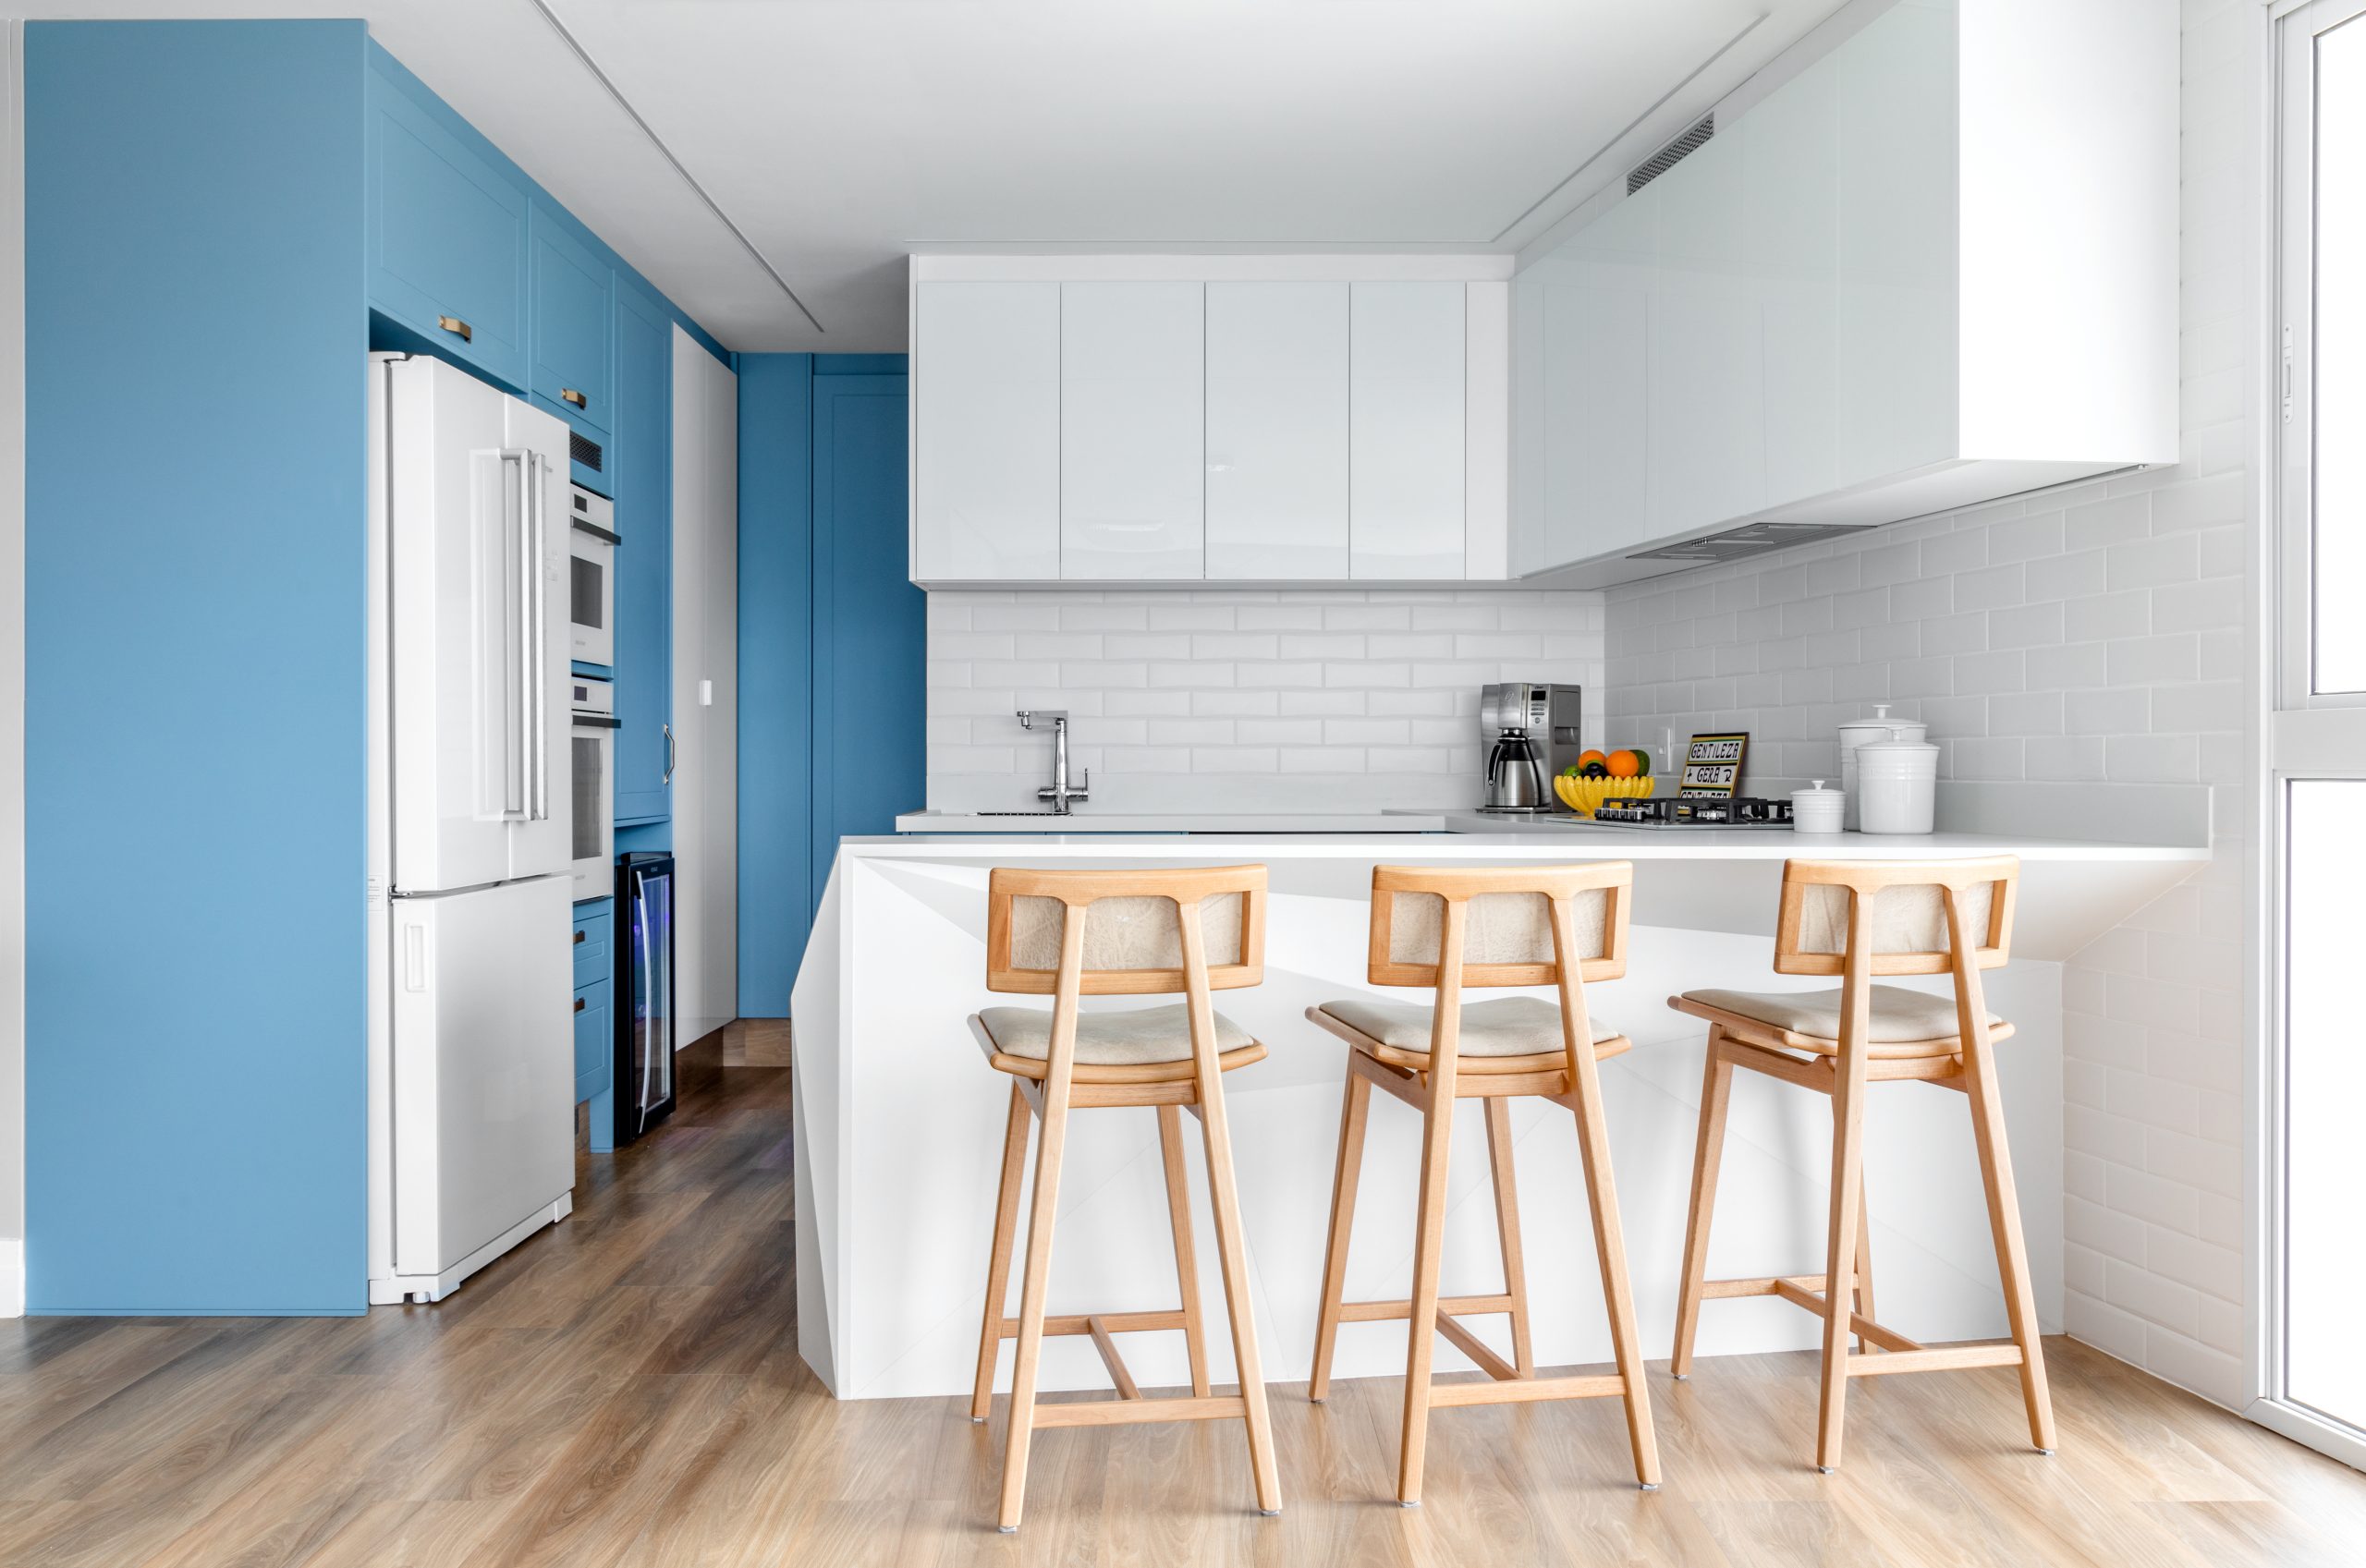 Nostalgia com modernidade: cozinhas retrô ganham espaço nos projetos de arquitetura